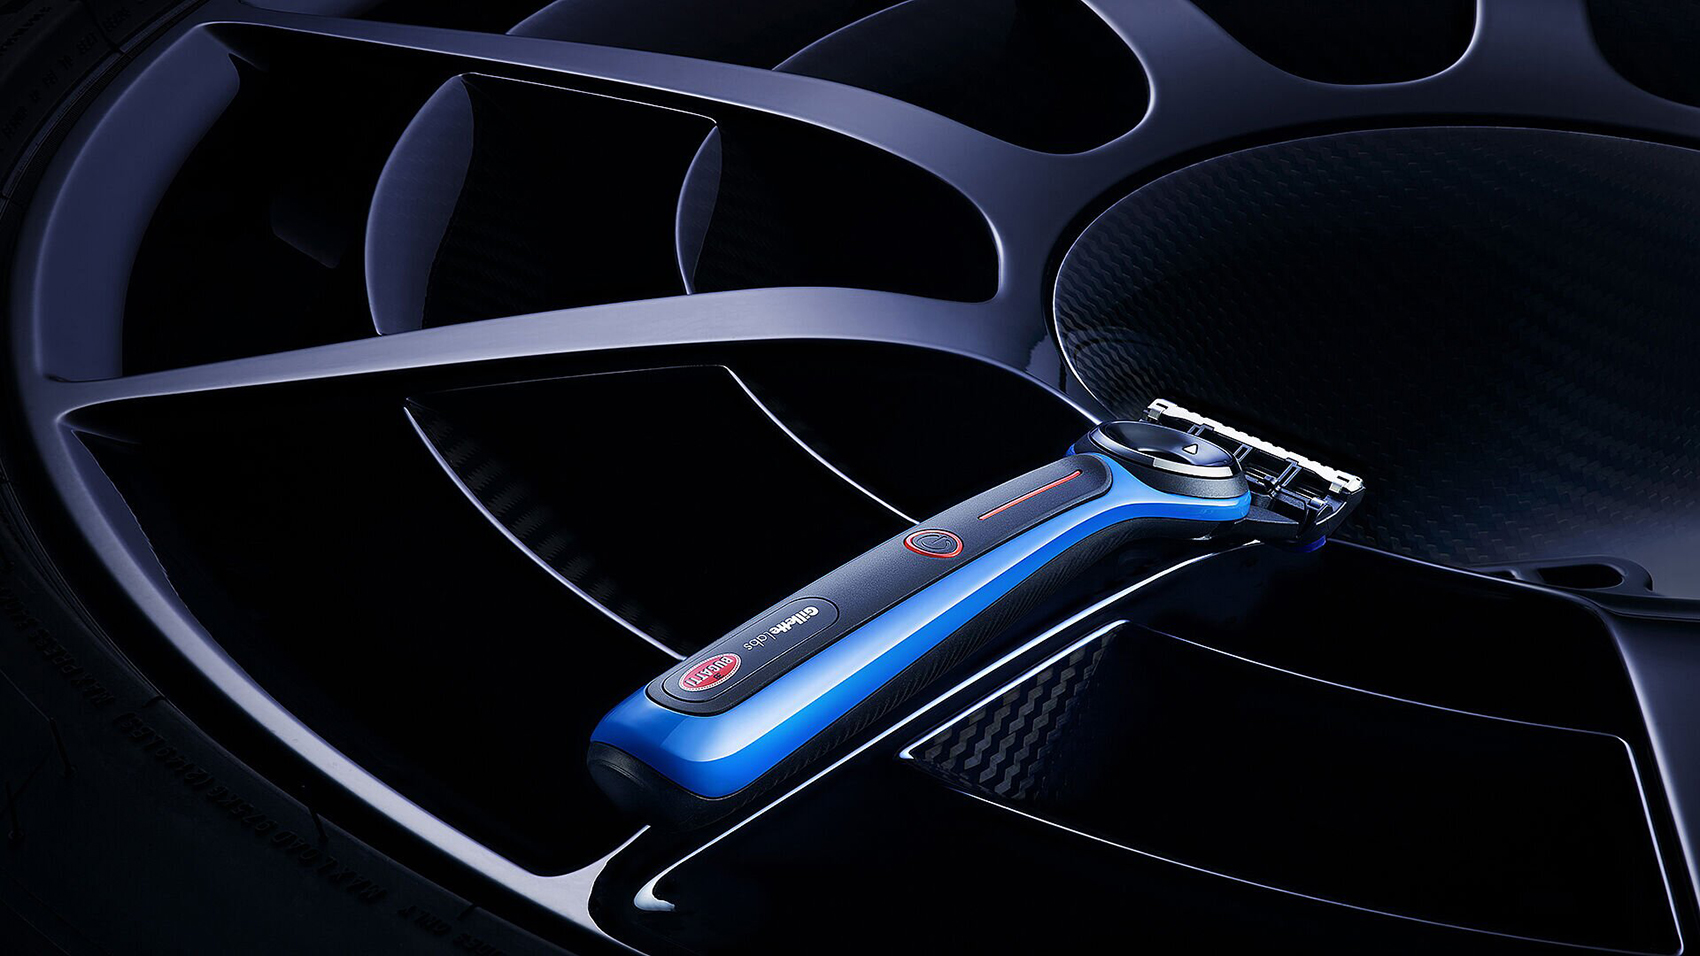 GilletteLabs Bugatti Special Edition Razor Review